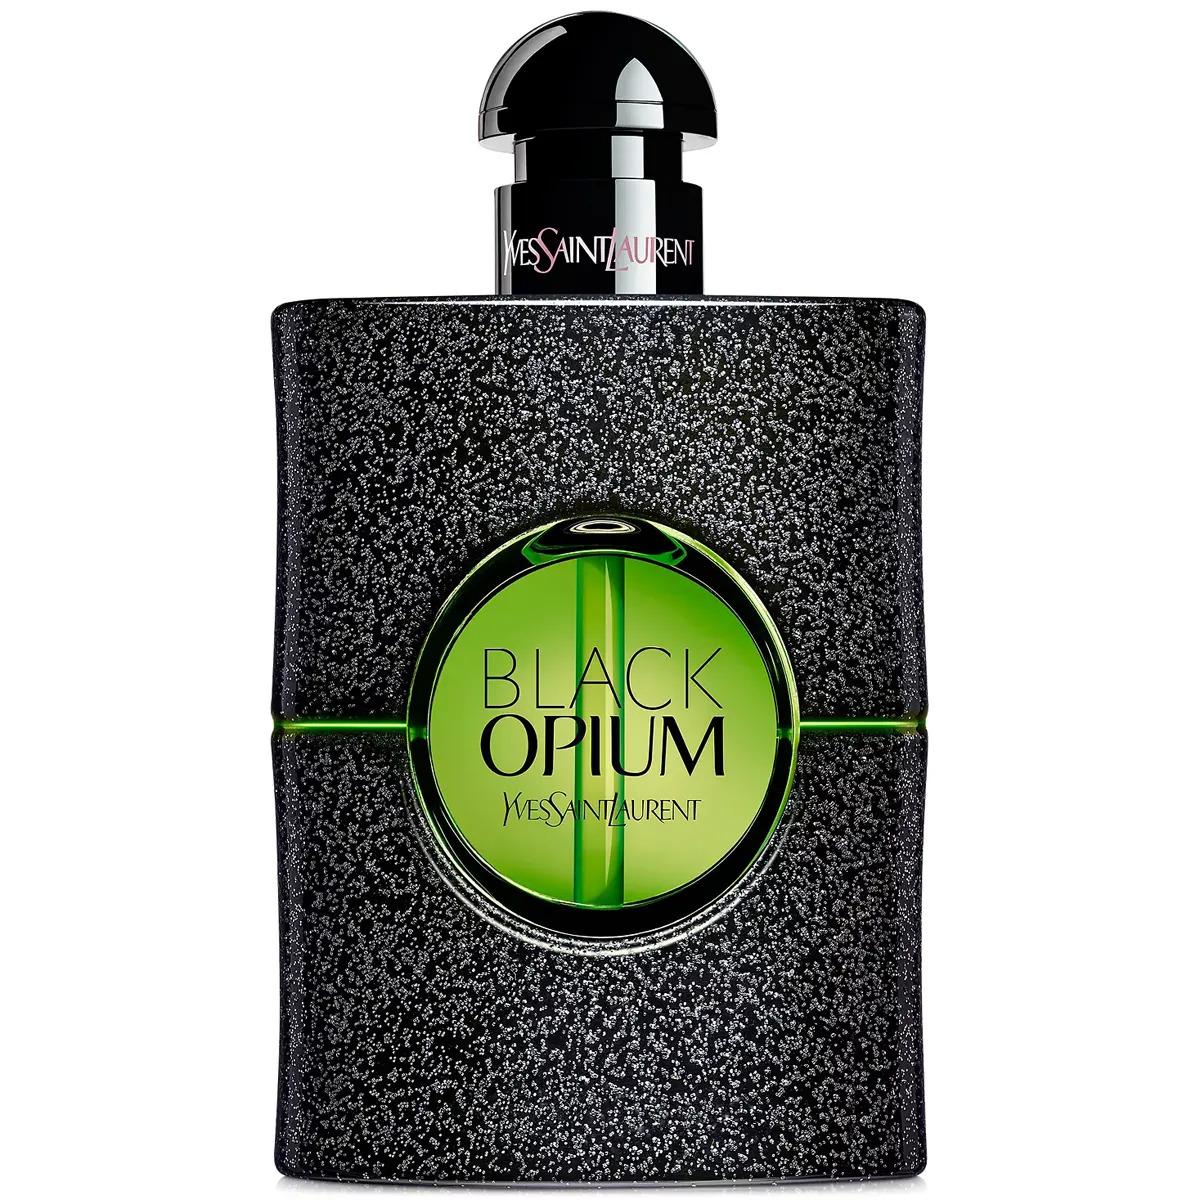 Yves Saint Laurent Womens Black Opium Eau de Parfum Perfume for $69 Shipped